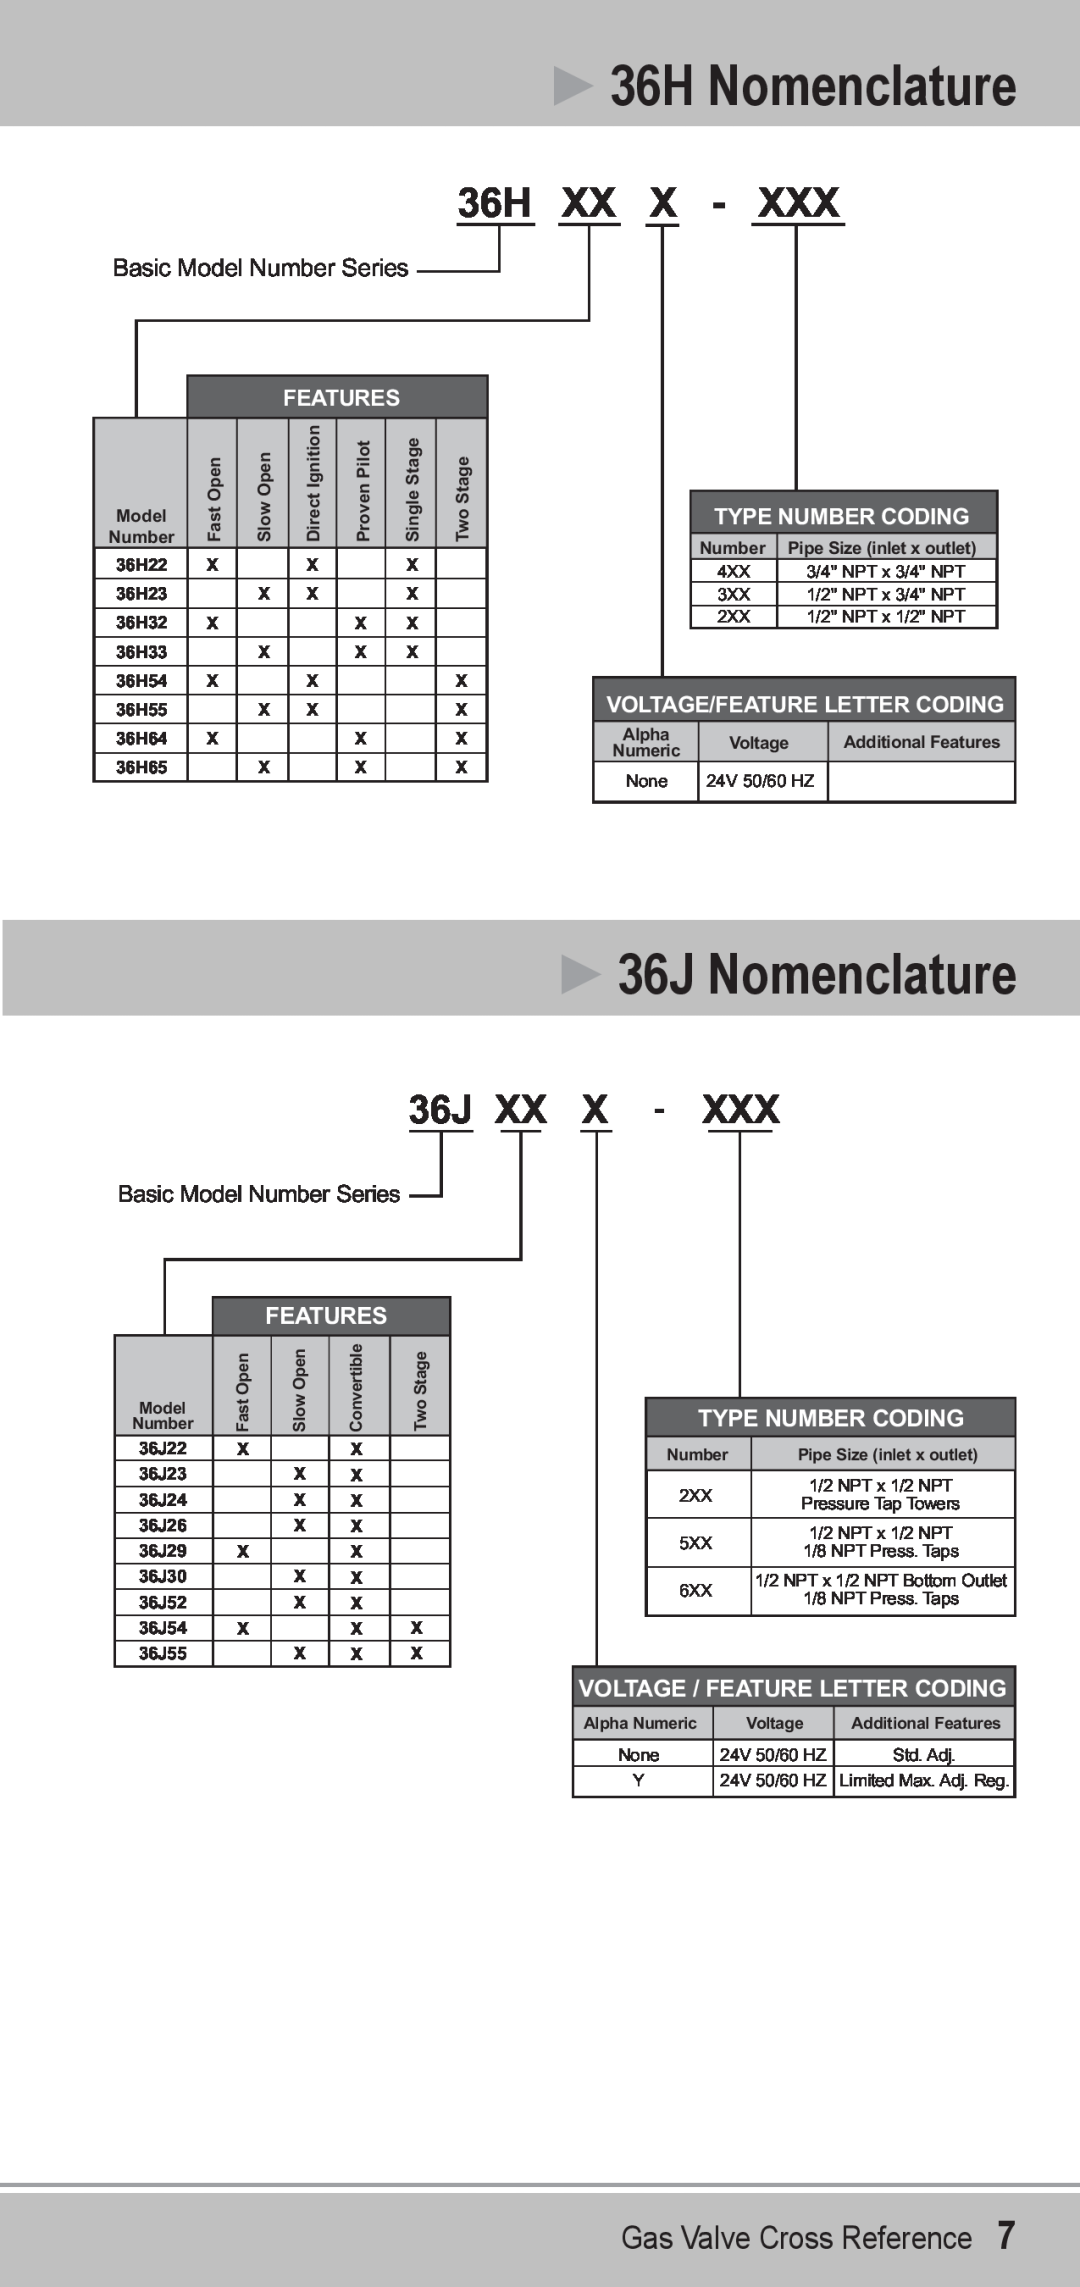 Emerson manual 36H Nomenclature, 36J Nomenclature, Features, Type Number Coding, Voltage/Feature Letter Coding 